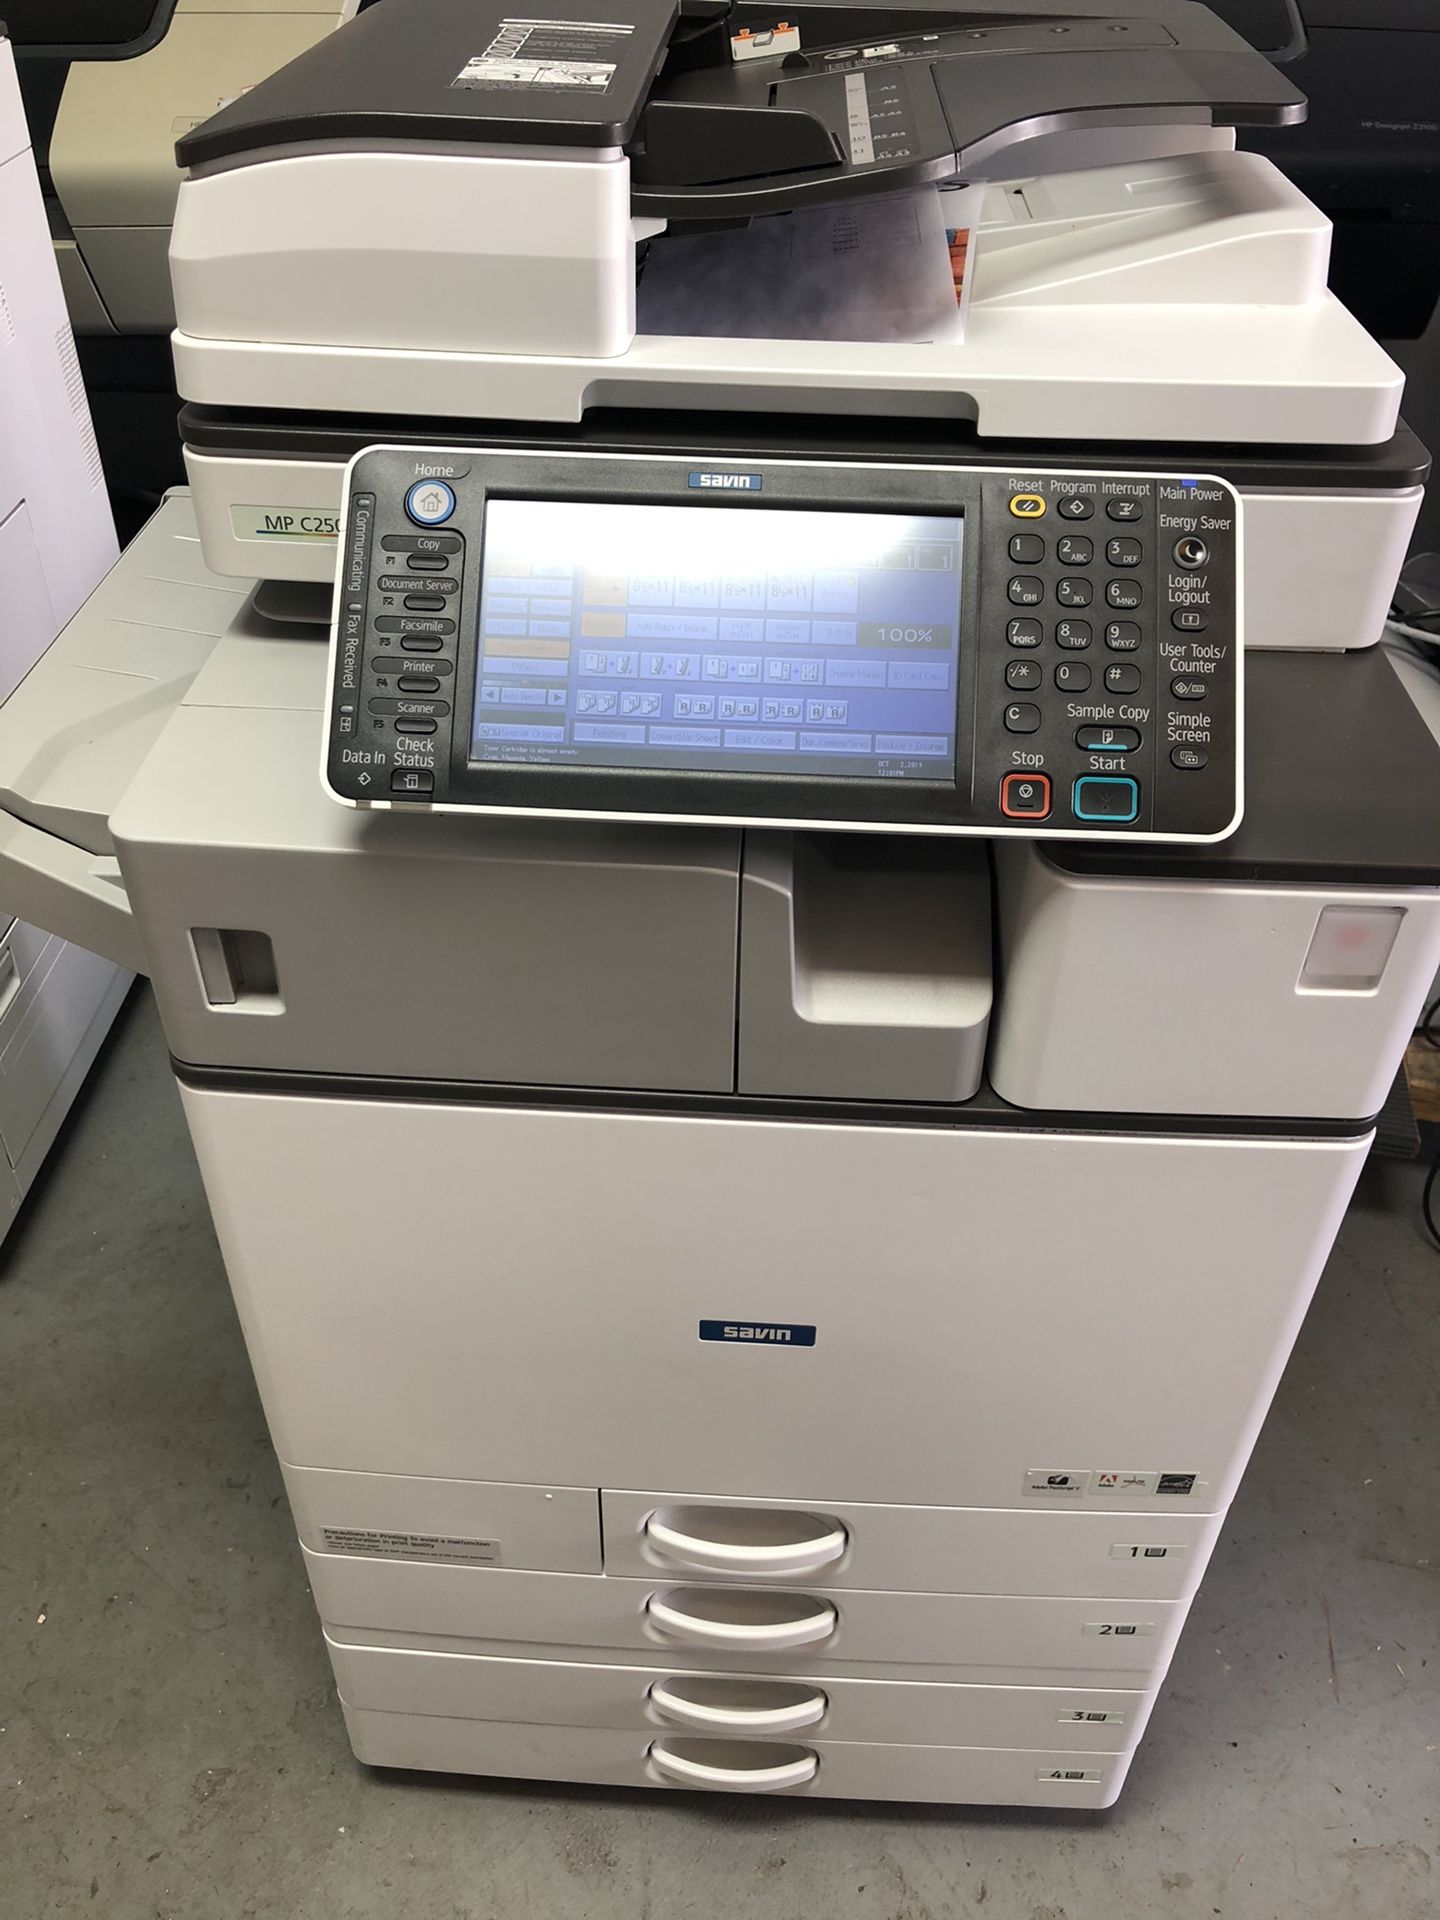 Savin c2503 color copier,fax,printer,scanner